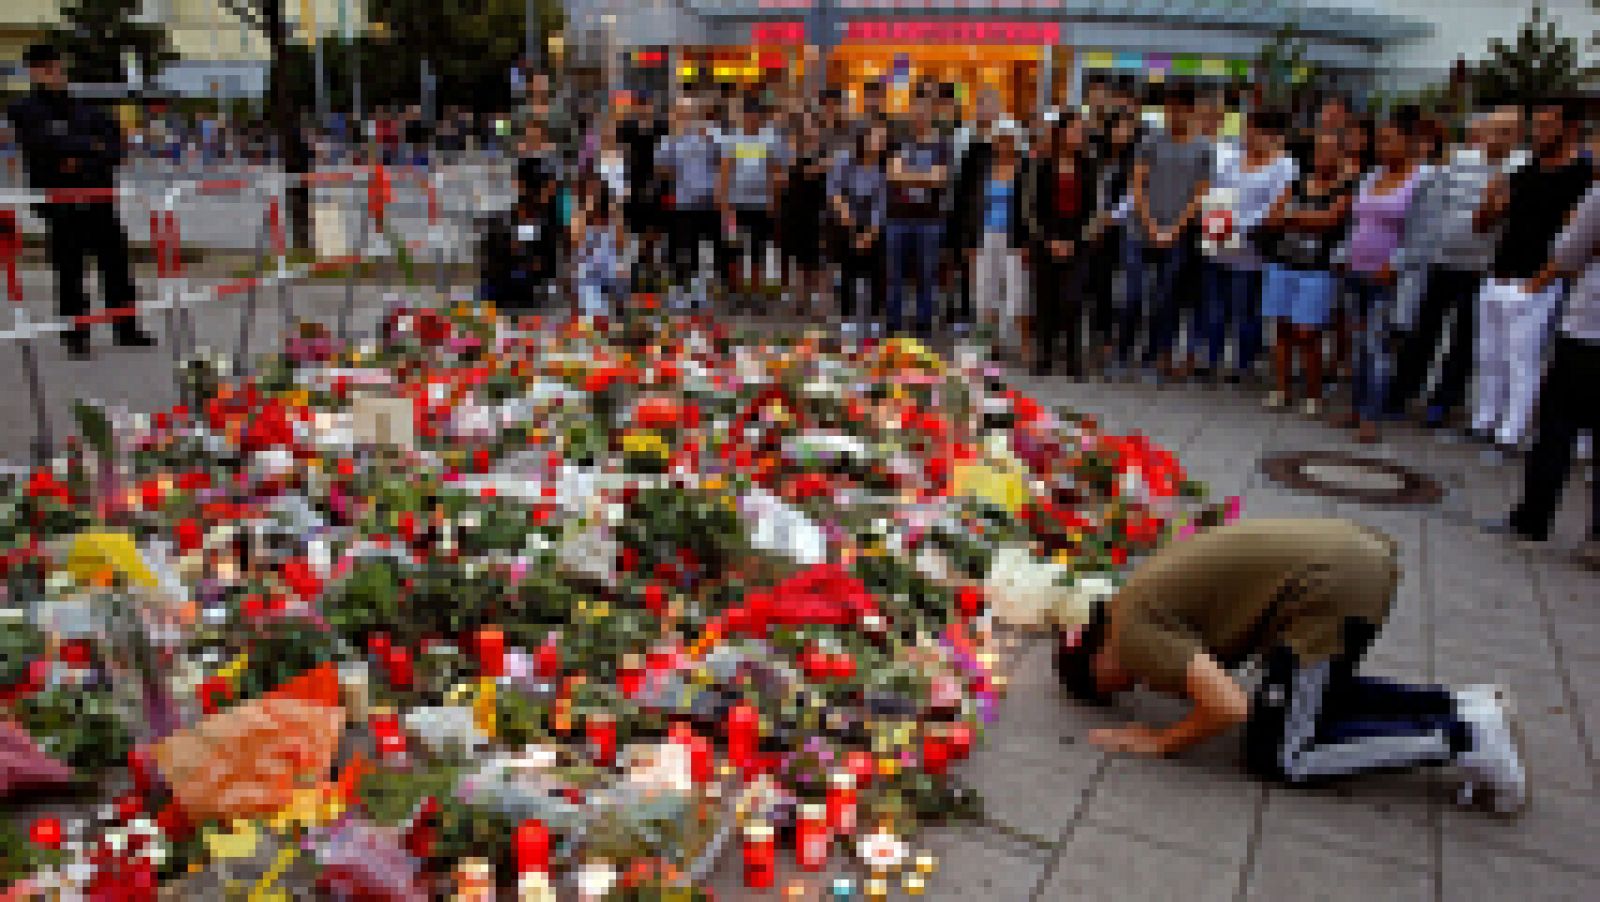 Alemania estudiará si endurece la legislación sobre las armas tras el tiroteo de Múnich